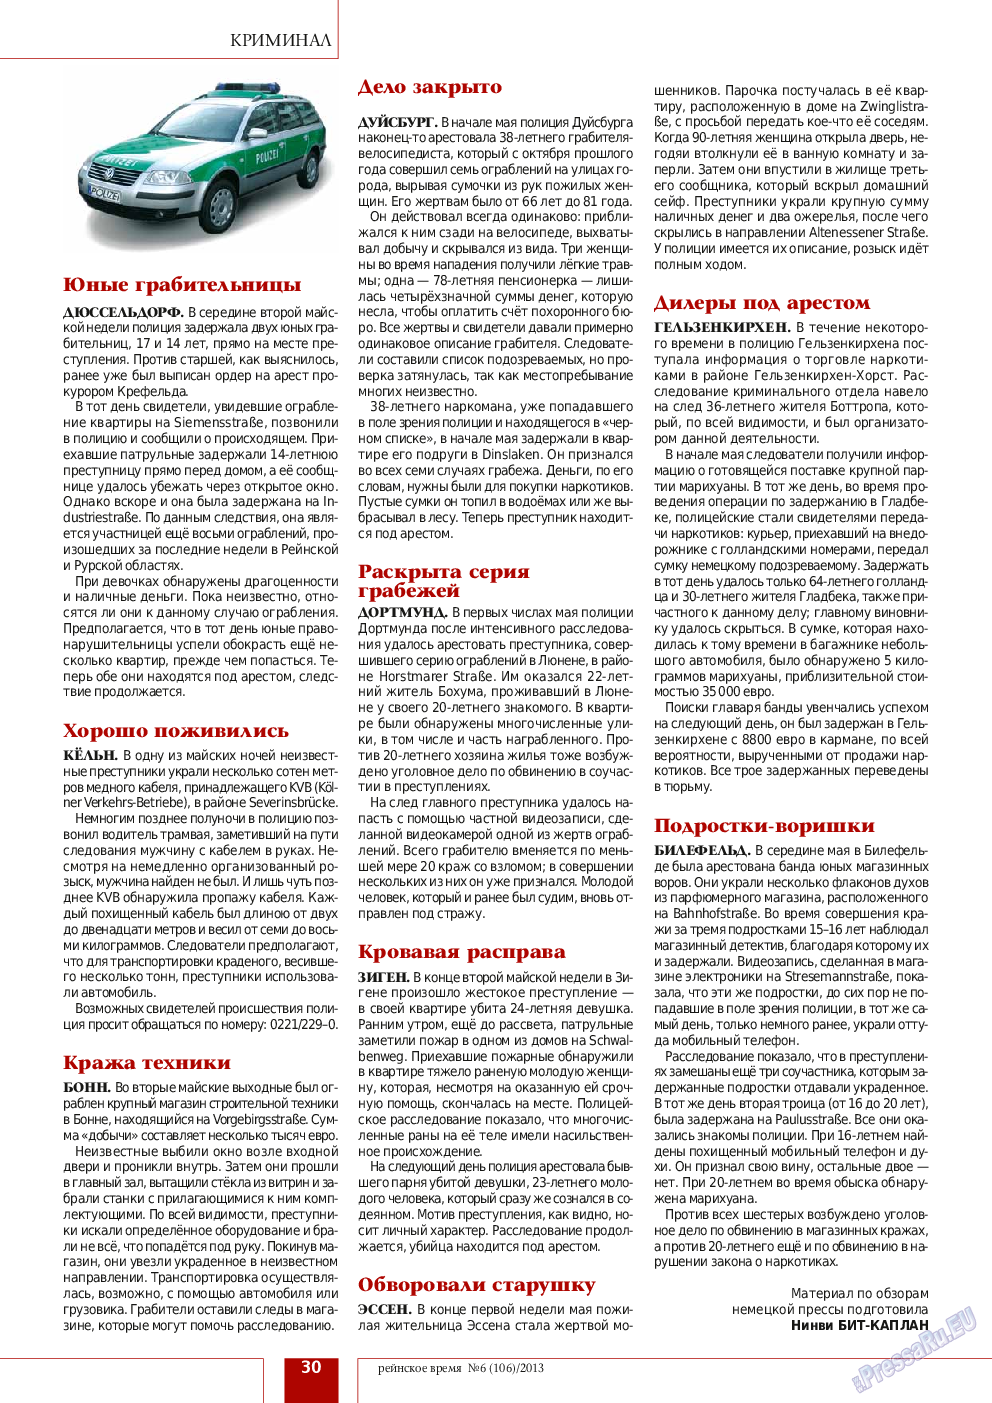 Рейнское время, журнал. 2013 №6 стр.30